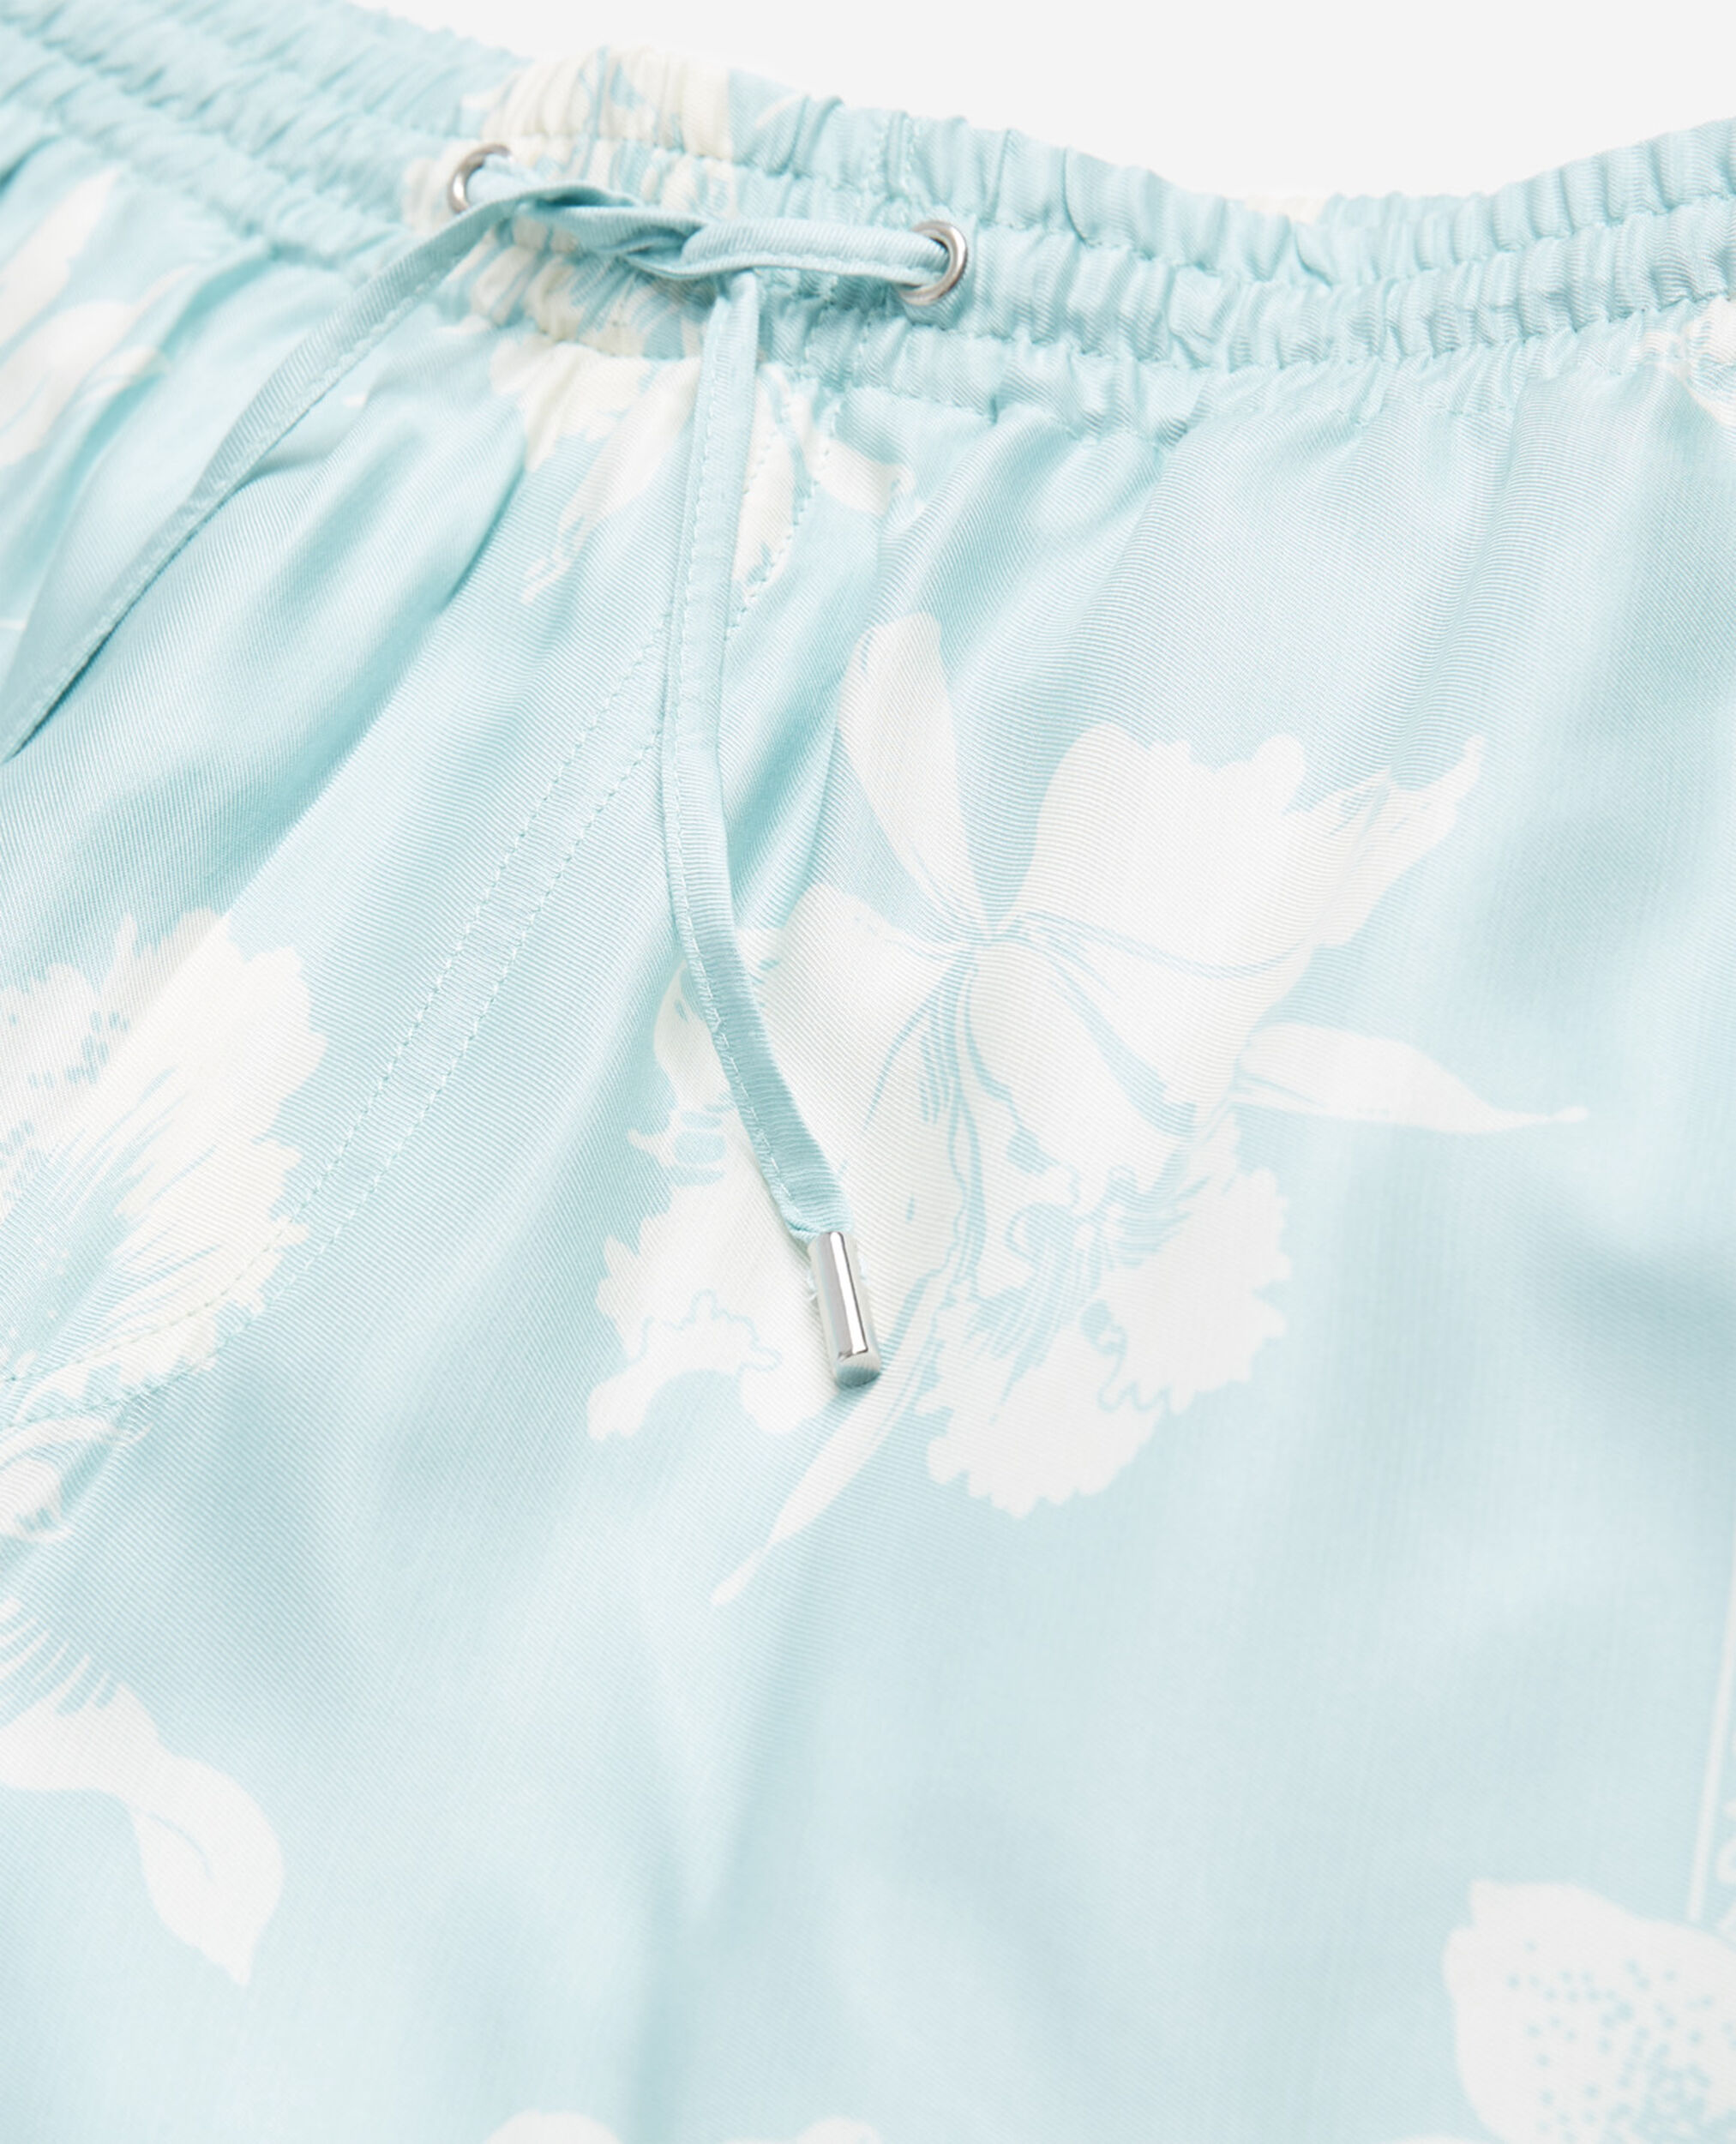 Azurblaue fließende Shorts mit Blumenmotiv, BLUE WHITE, hi-res image number null